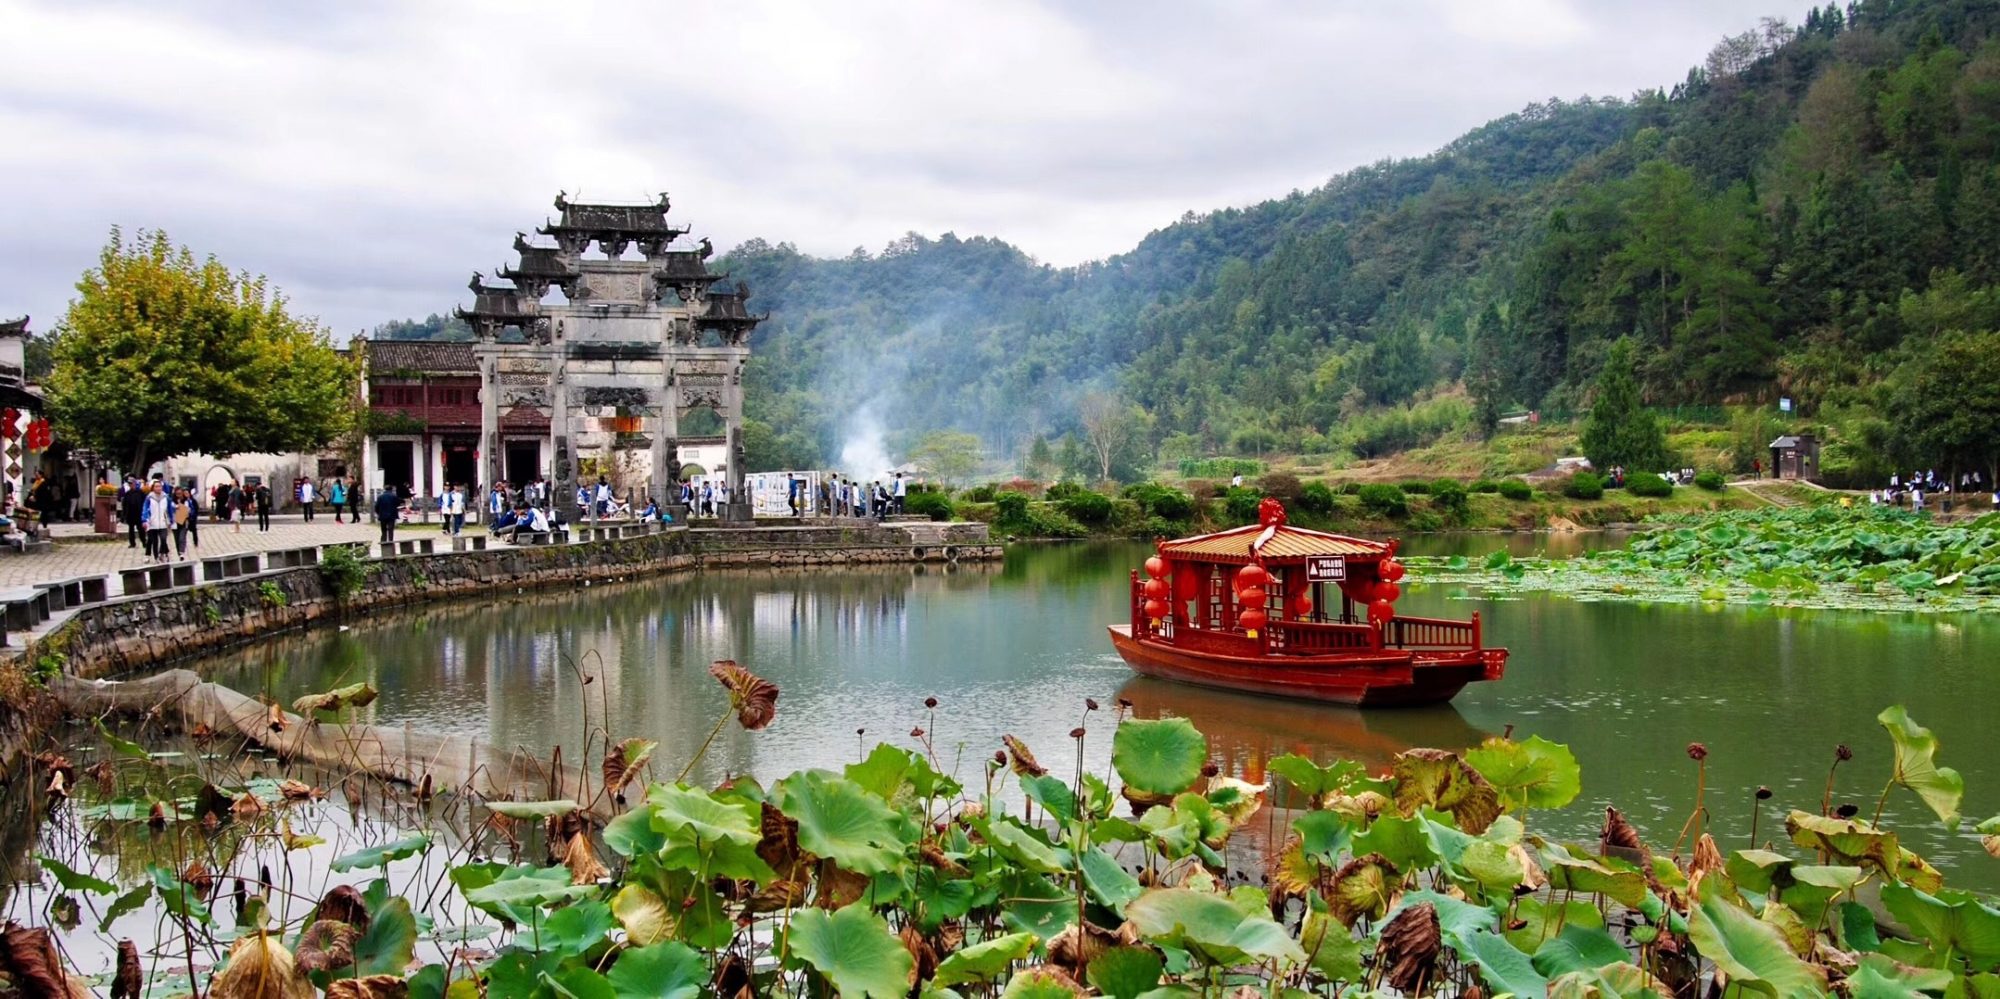 Región de Zhejiang, cuando el pasodoble ayuda a promocionar una de las más bellas zonas de China